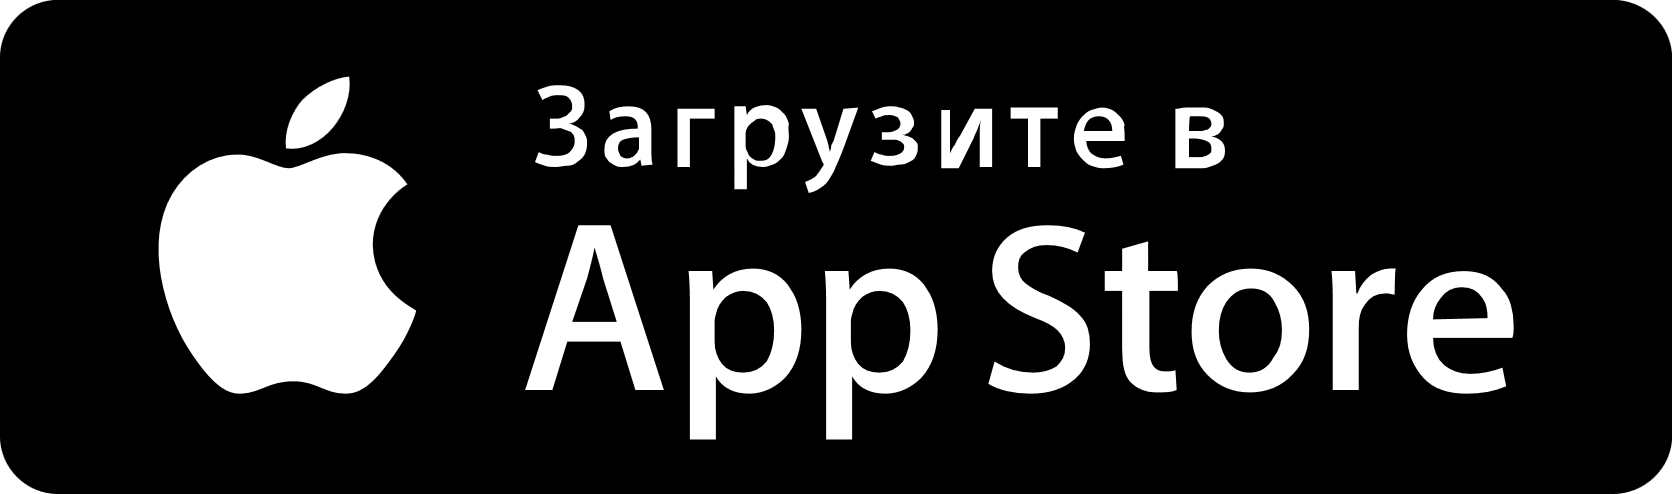 Загрузить приложение в App Store